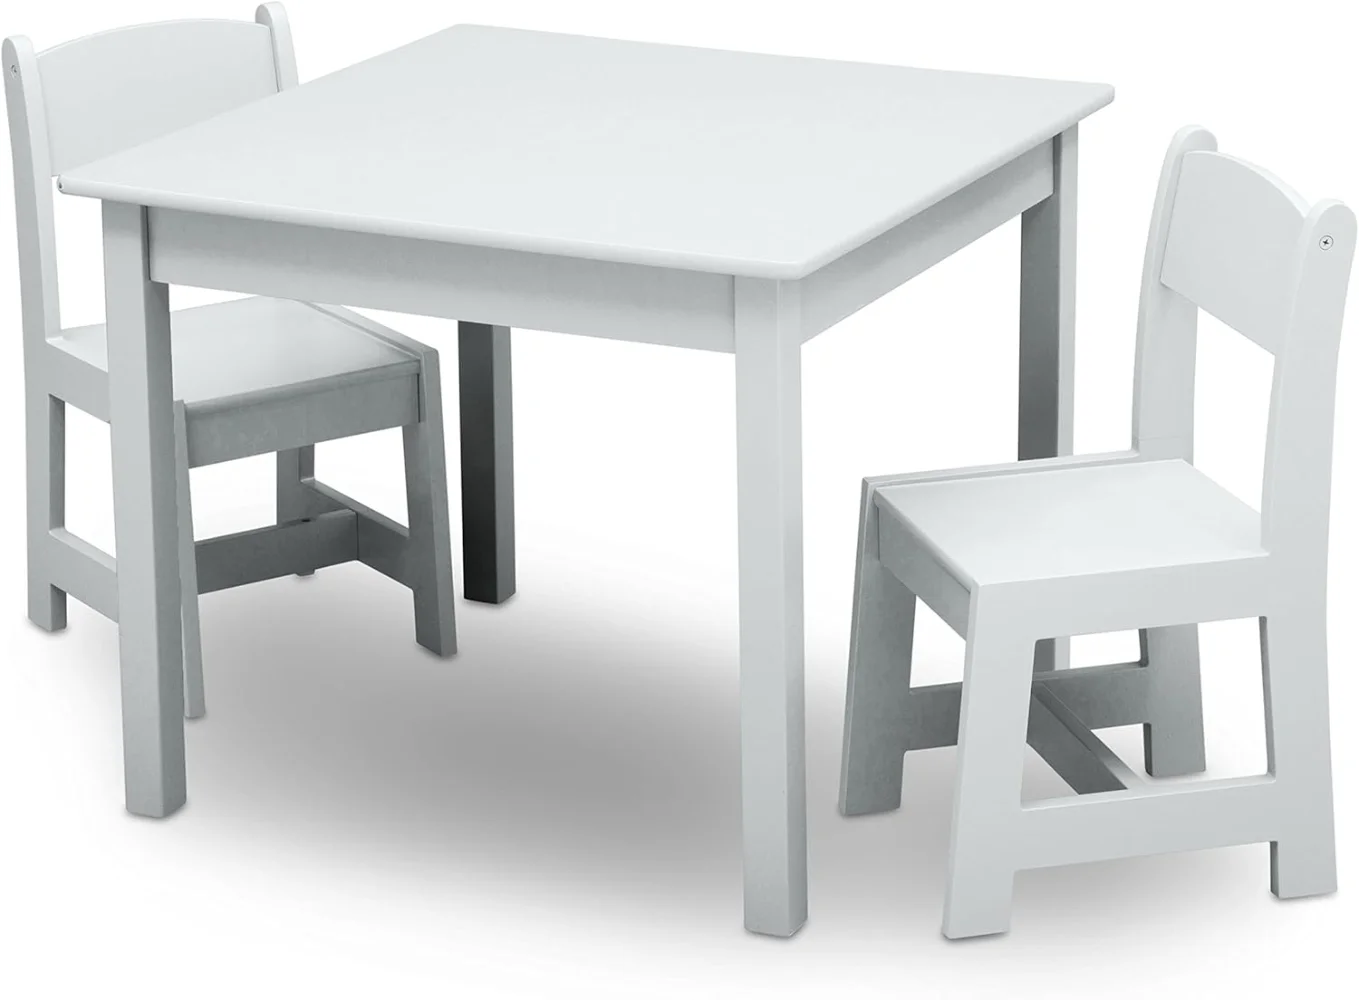 ชุดโต๊ะและเก้าอี้ไม้สำหรับเด็กของ mysize (รวมเก้าอี้2ตัว)-เหมาะสำหรับงานศิลปะและงานฝีมือเวลาทานอาหารว่างเพิ่มเติม-ได้รับการรับรองสีเขียวทอง